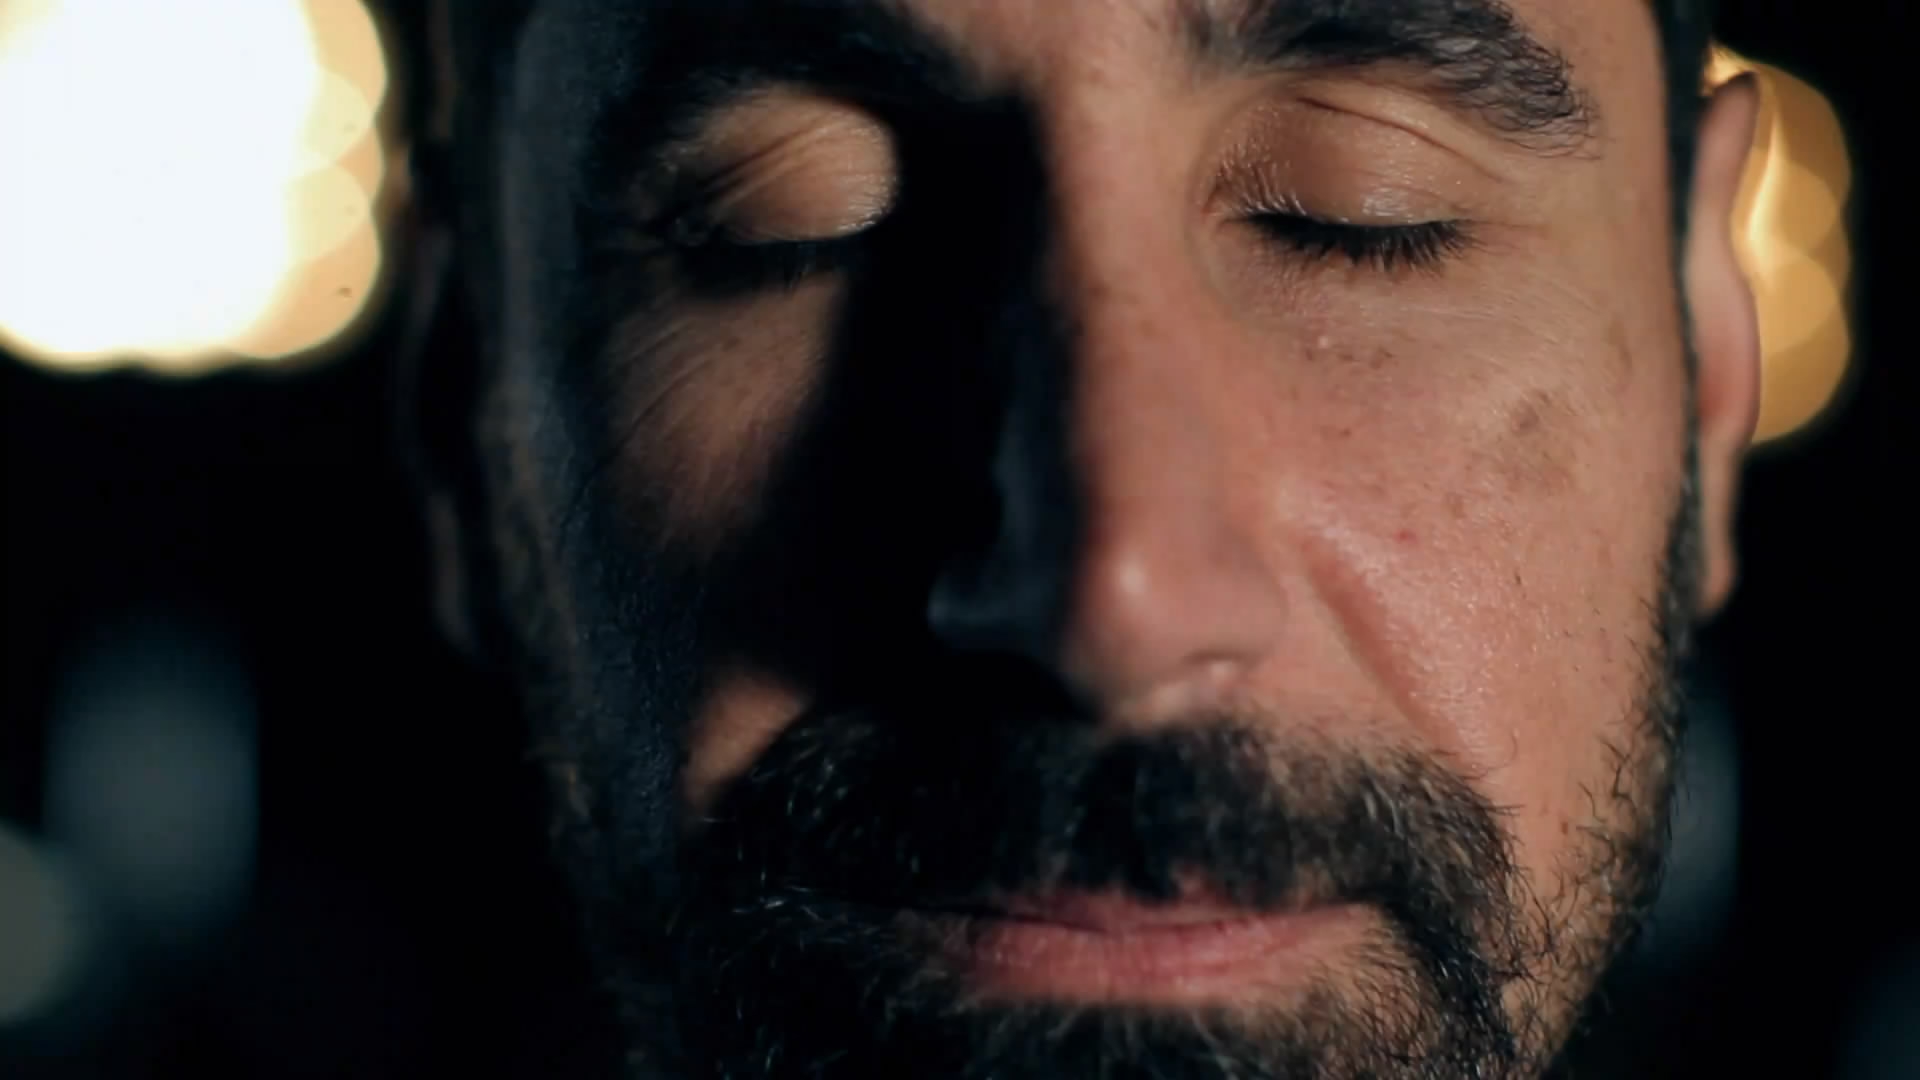 Wallpaper Serj Tankian Face Beard